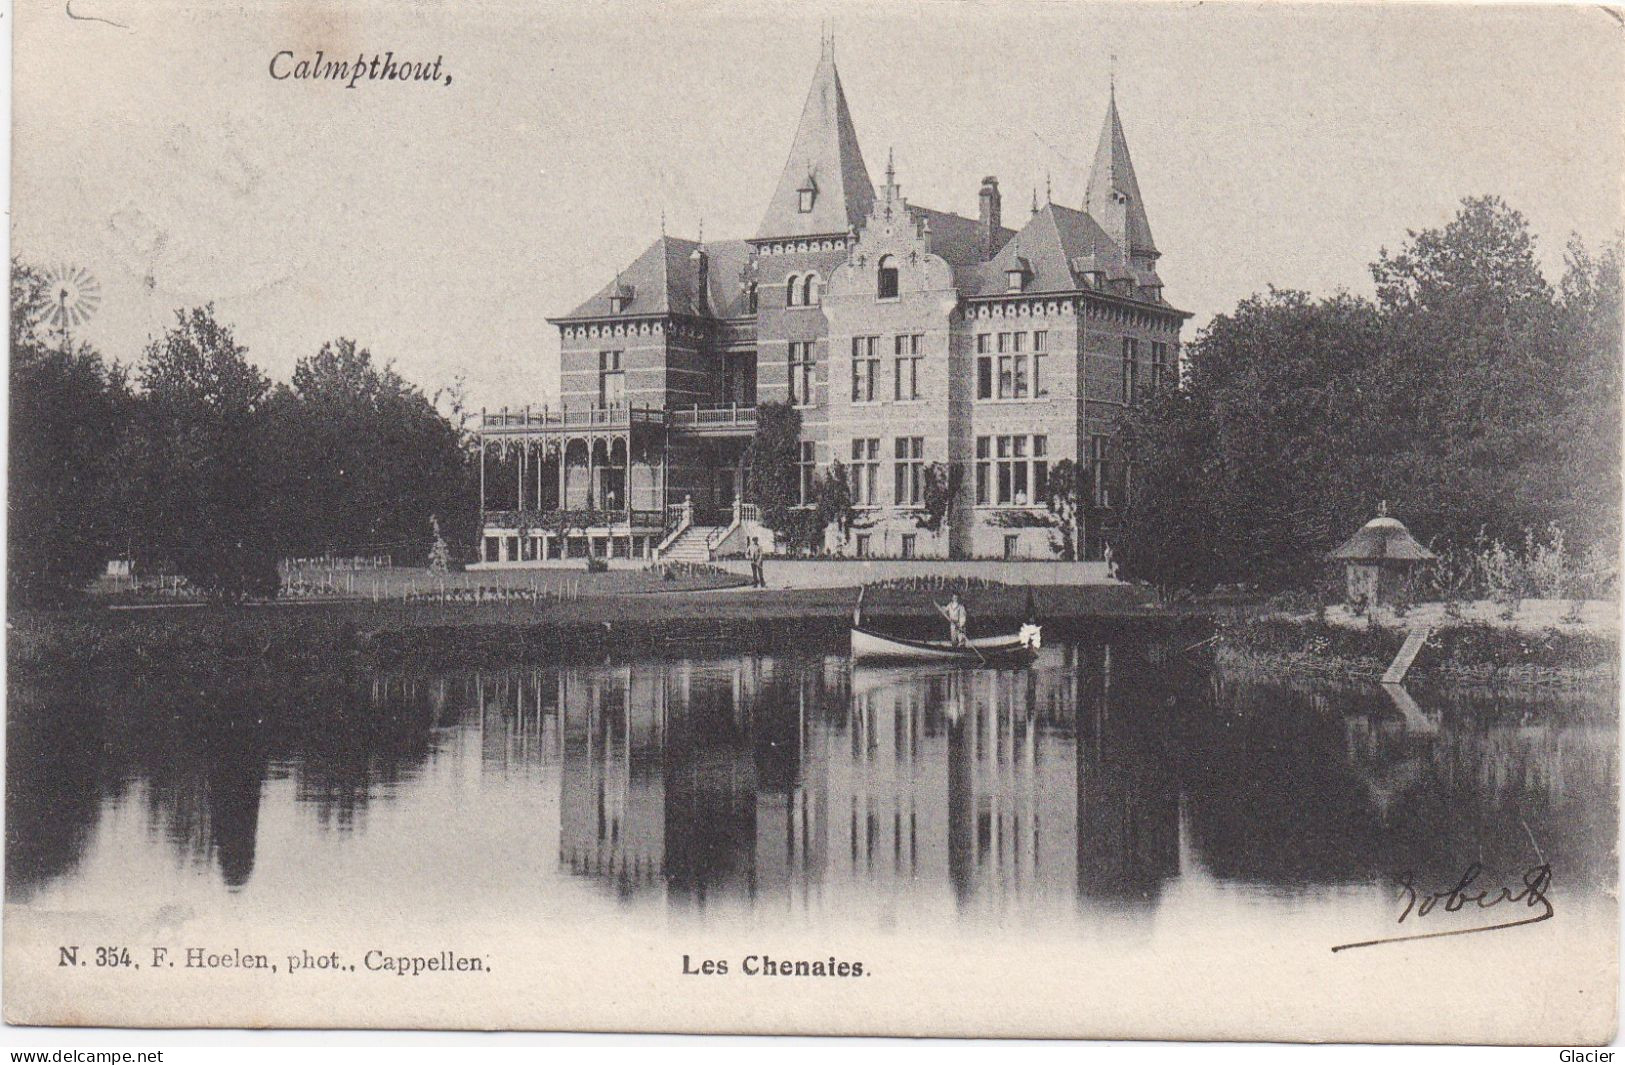 Calmpthout - Les Chenaies - 354 F. Hoelen - Kalmthout